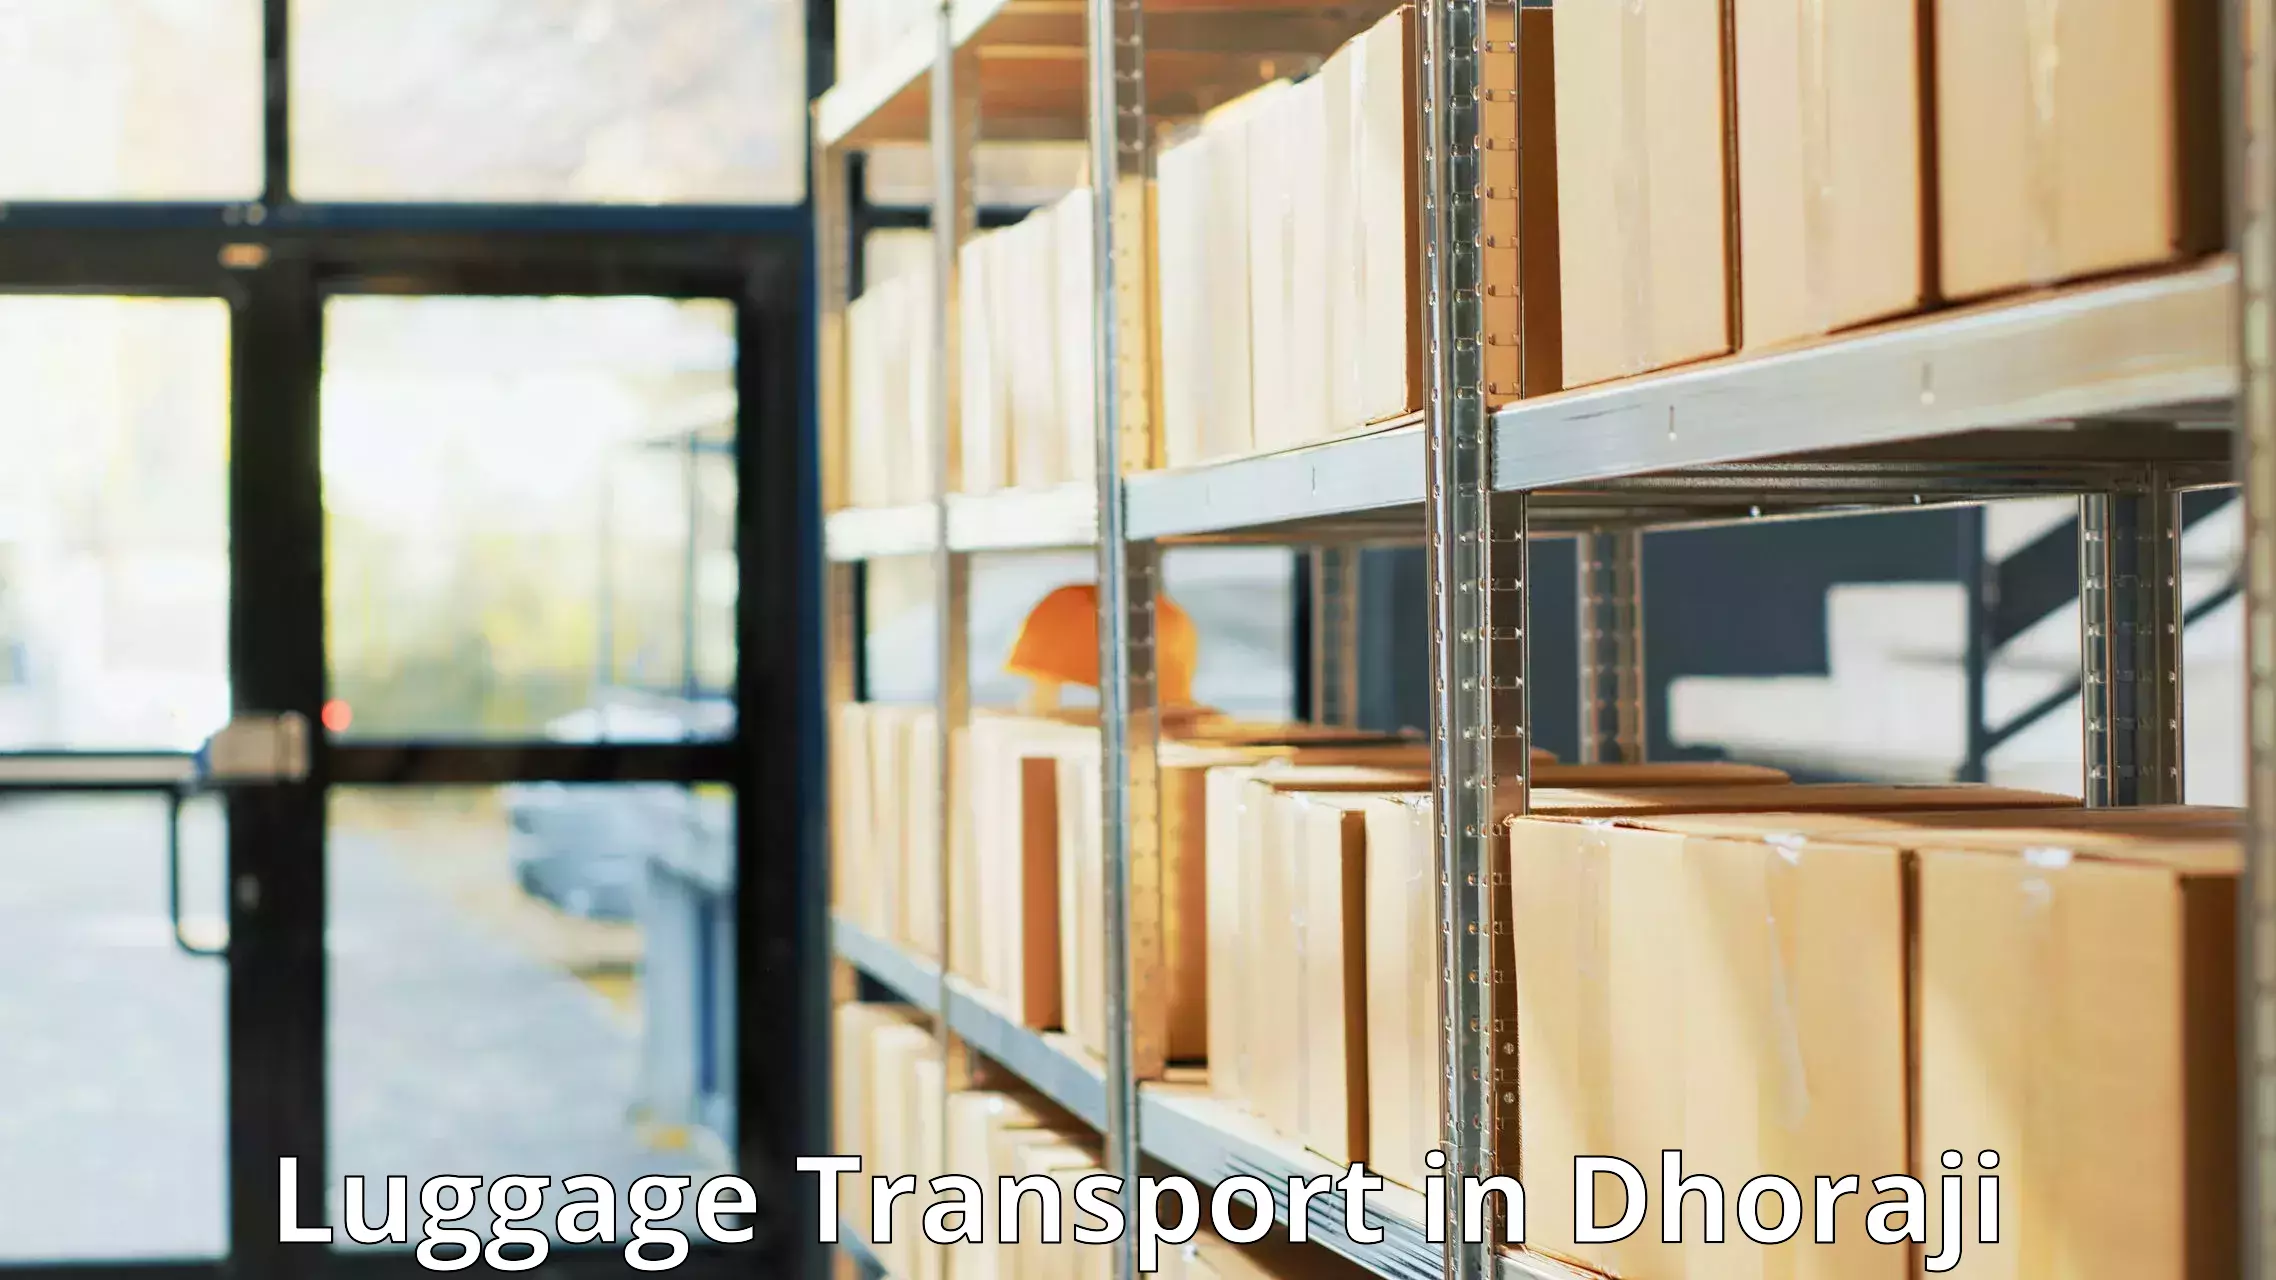 Luggage delivery estimate in Dhoraji